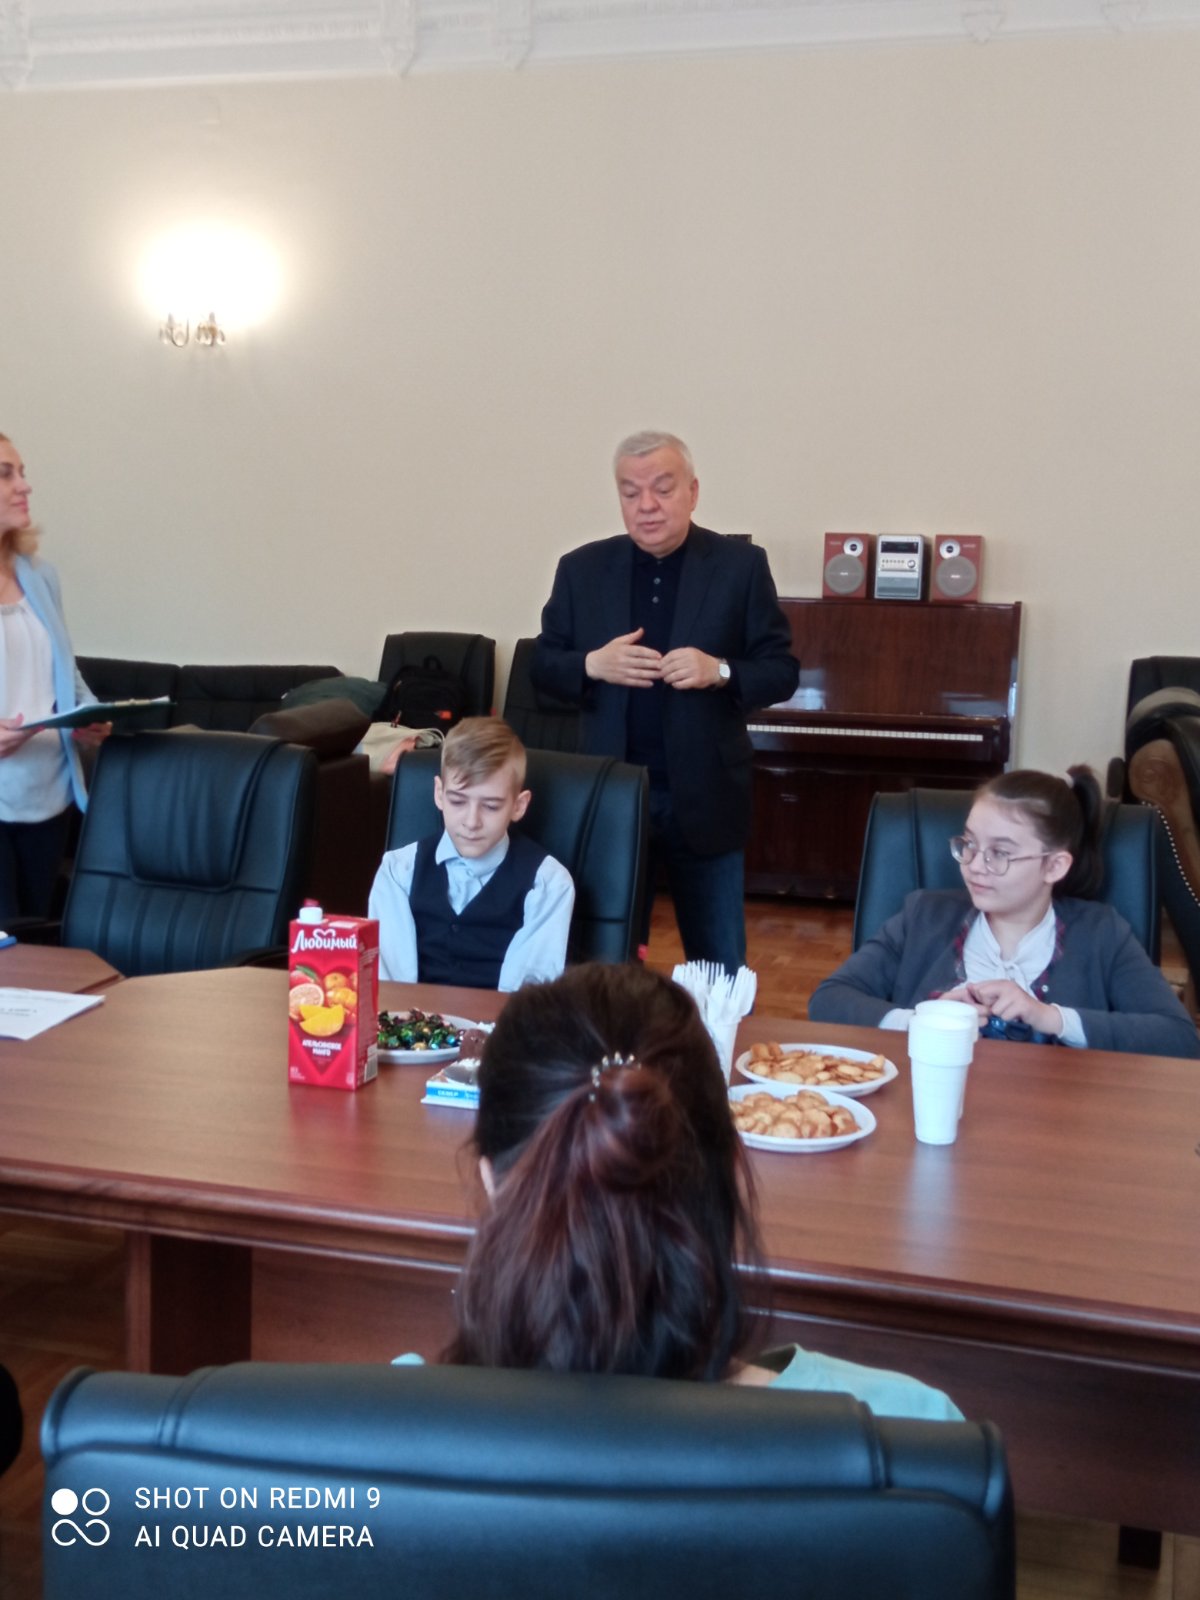 Тържествено връчване на дипломите на учениците от Българското неделно училище „Закрила” към Генералното консулство на Република България в Санкт Петербург 